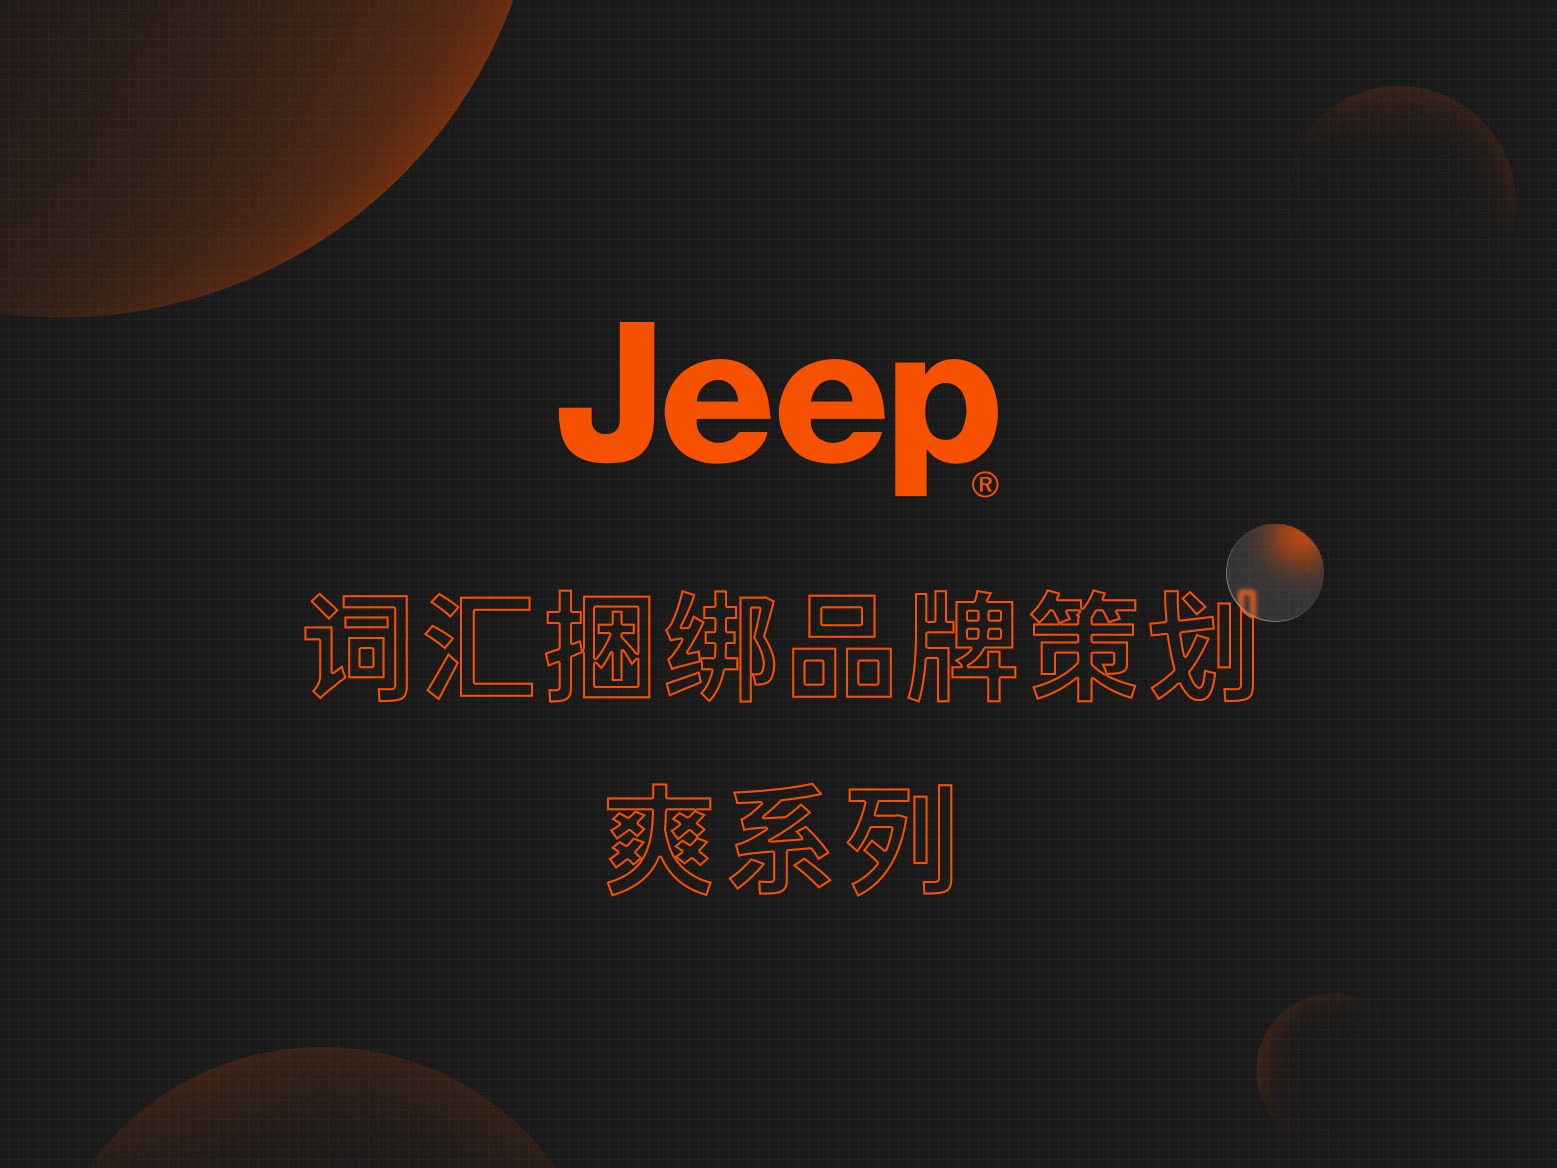 jeep爽系列词汇捆绑品牌策划